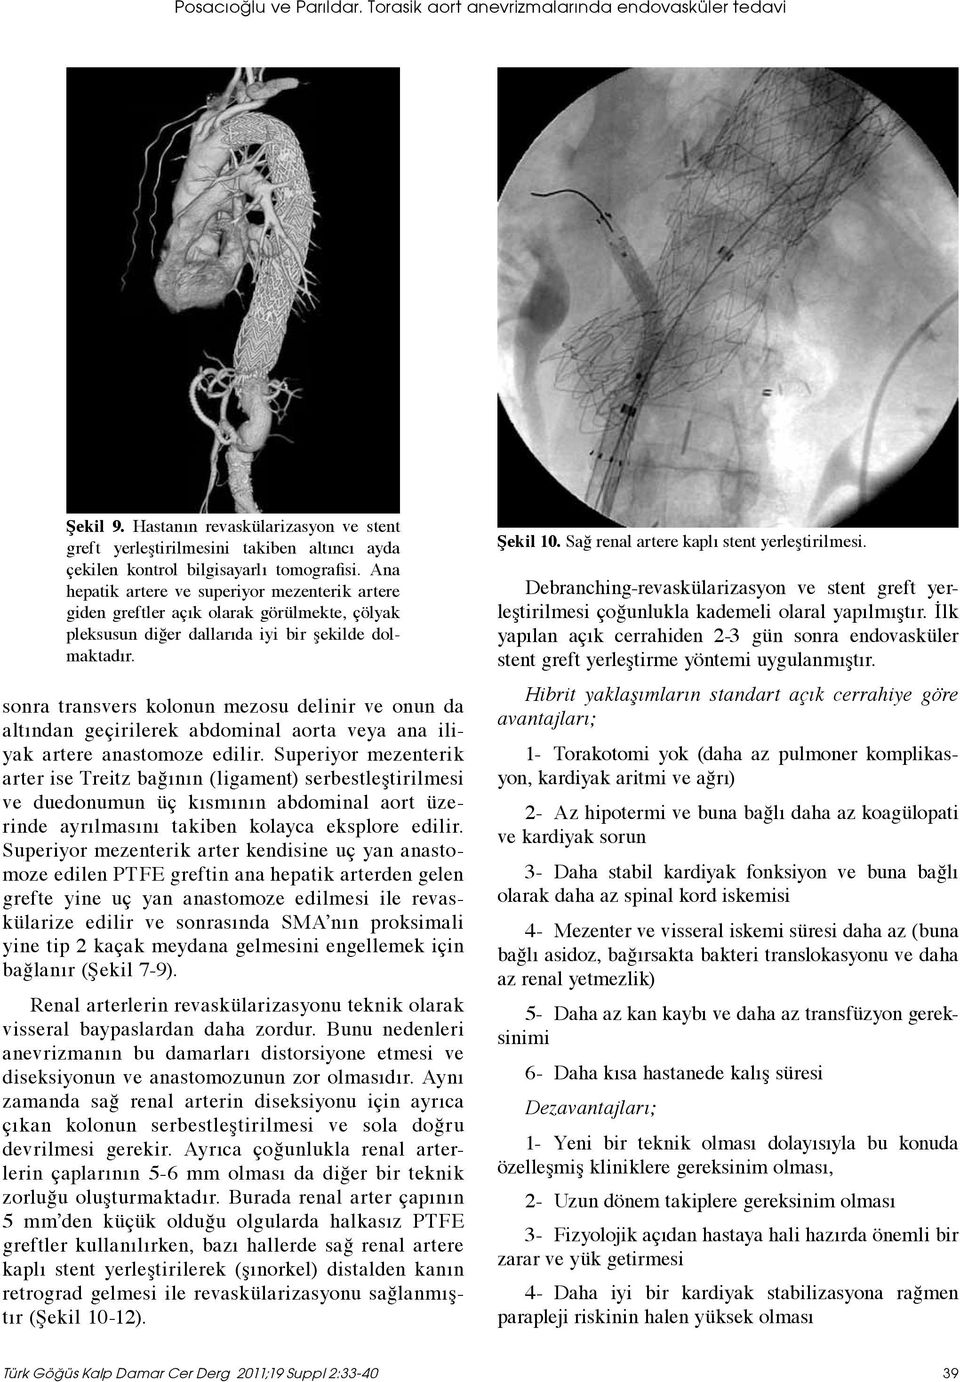 Ana hepatik artere ve superiyor mezenterik artere giden greftler açık olarak görülmekte, çölyak pleksusun diğer dallarıda iyi bir şekilde dolmaktadır.